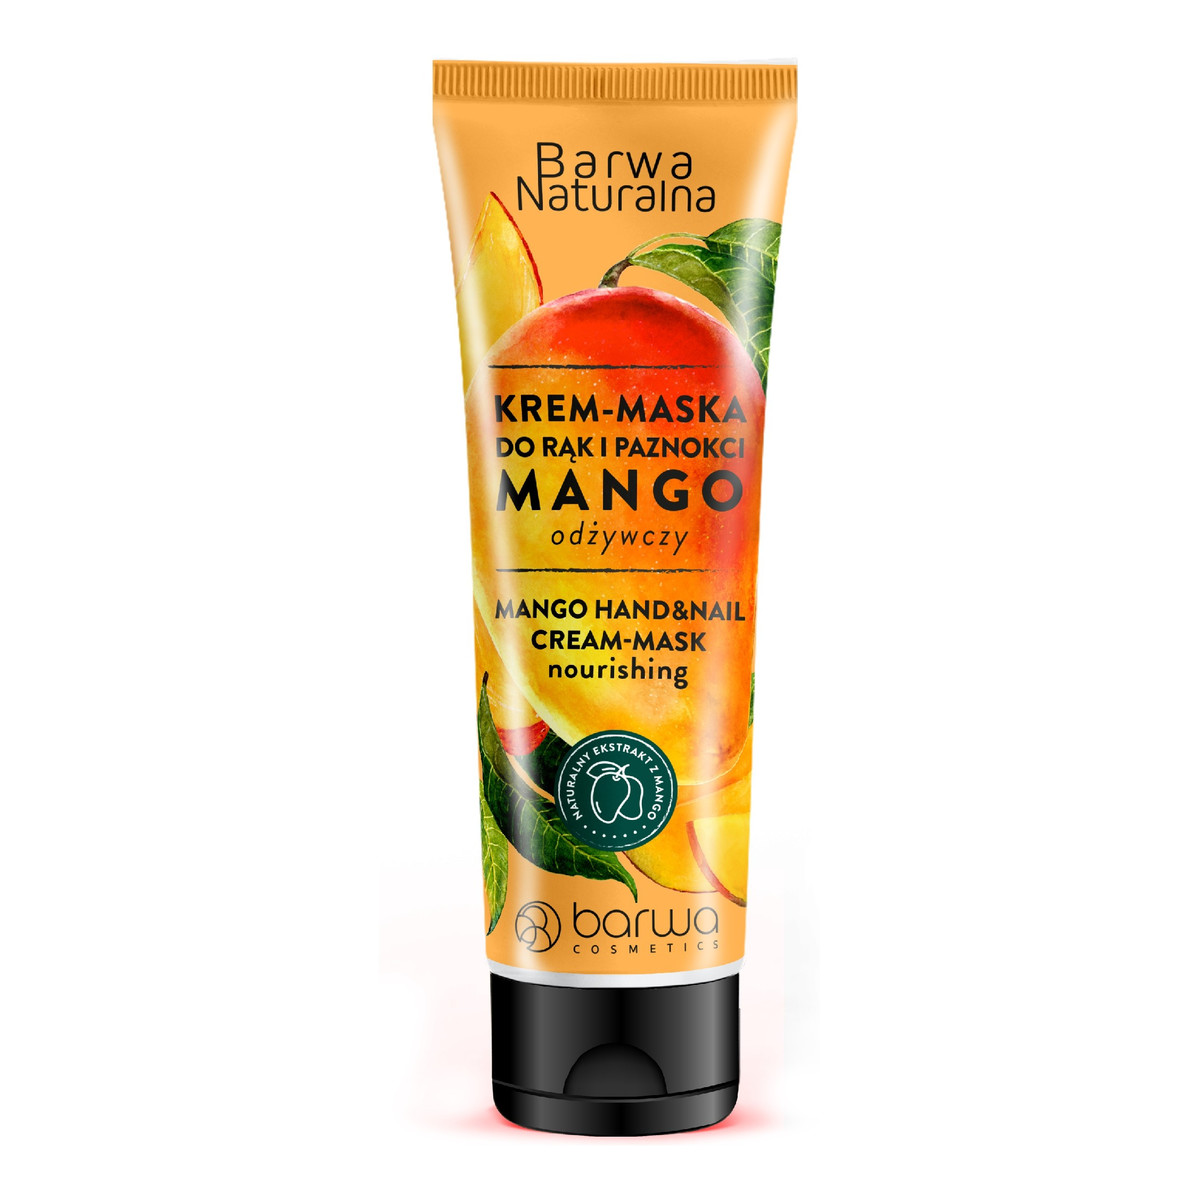 Barwa Naturalna Krem-maska do rąk i paznokci odżywczy Mango 100ml